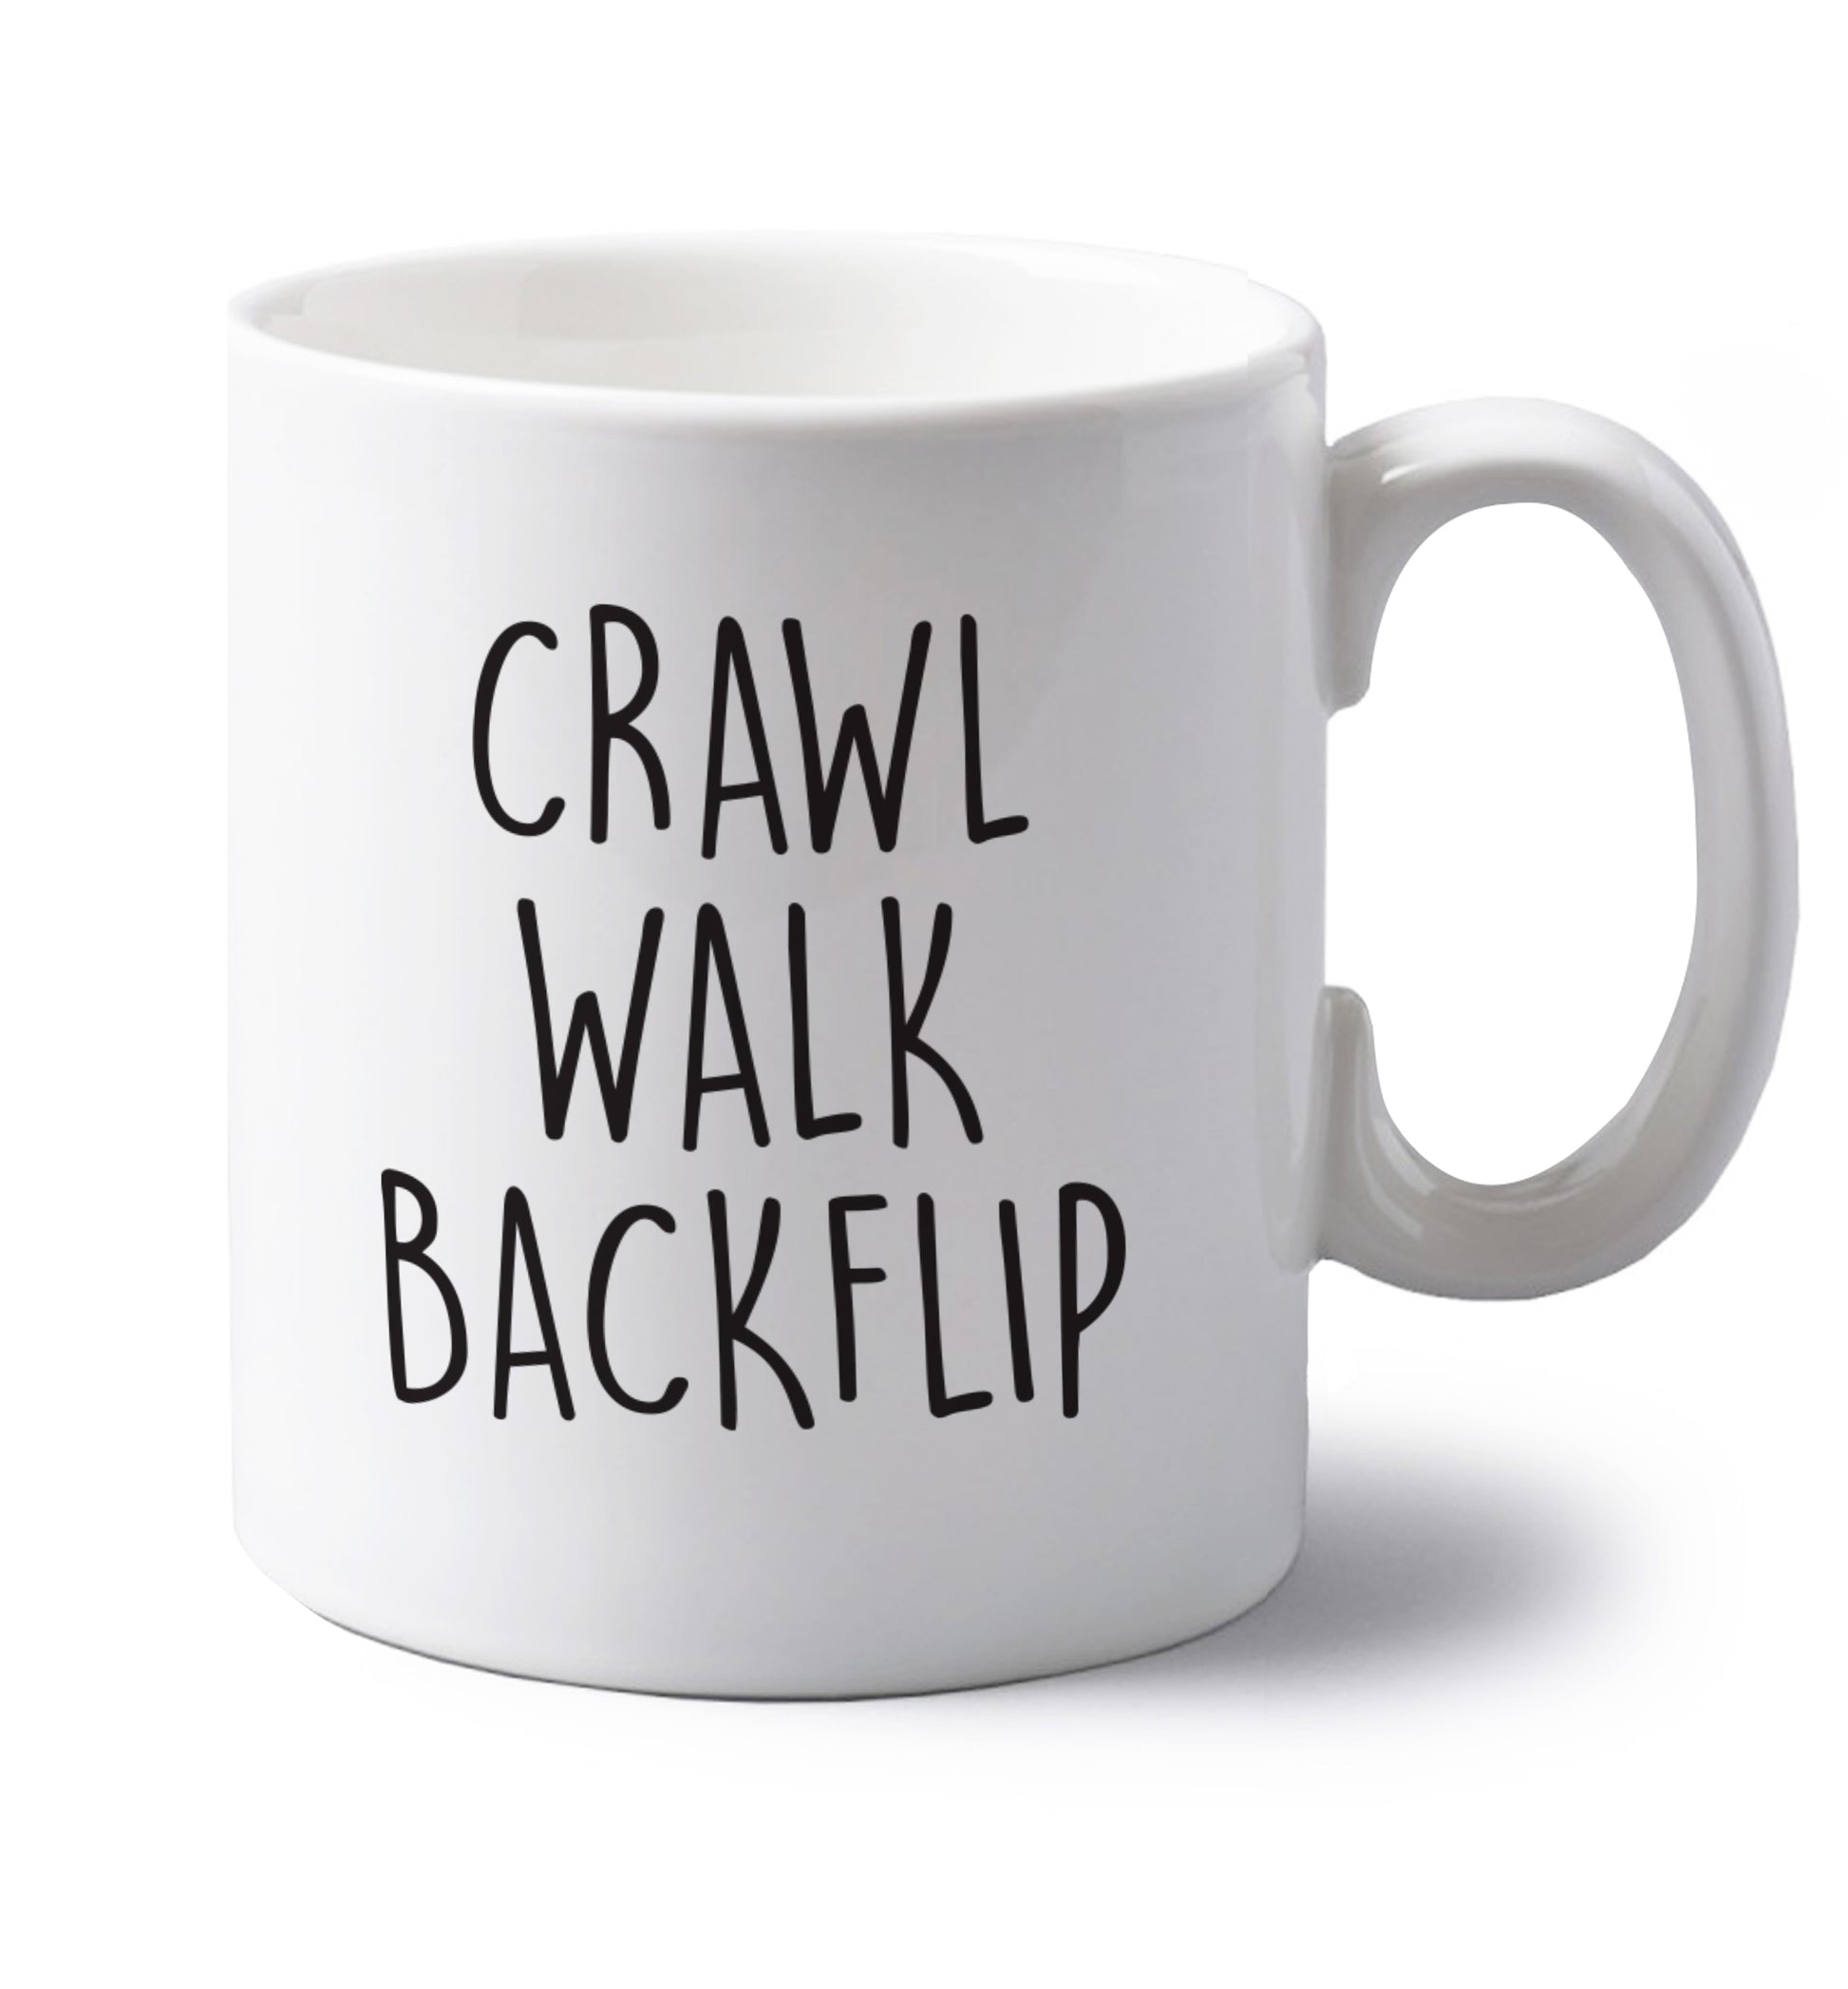 Crawl Walk Backflip left handed white ceramic mug 